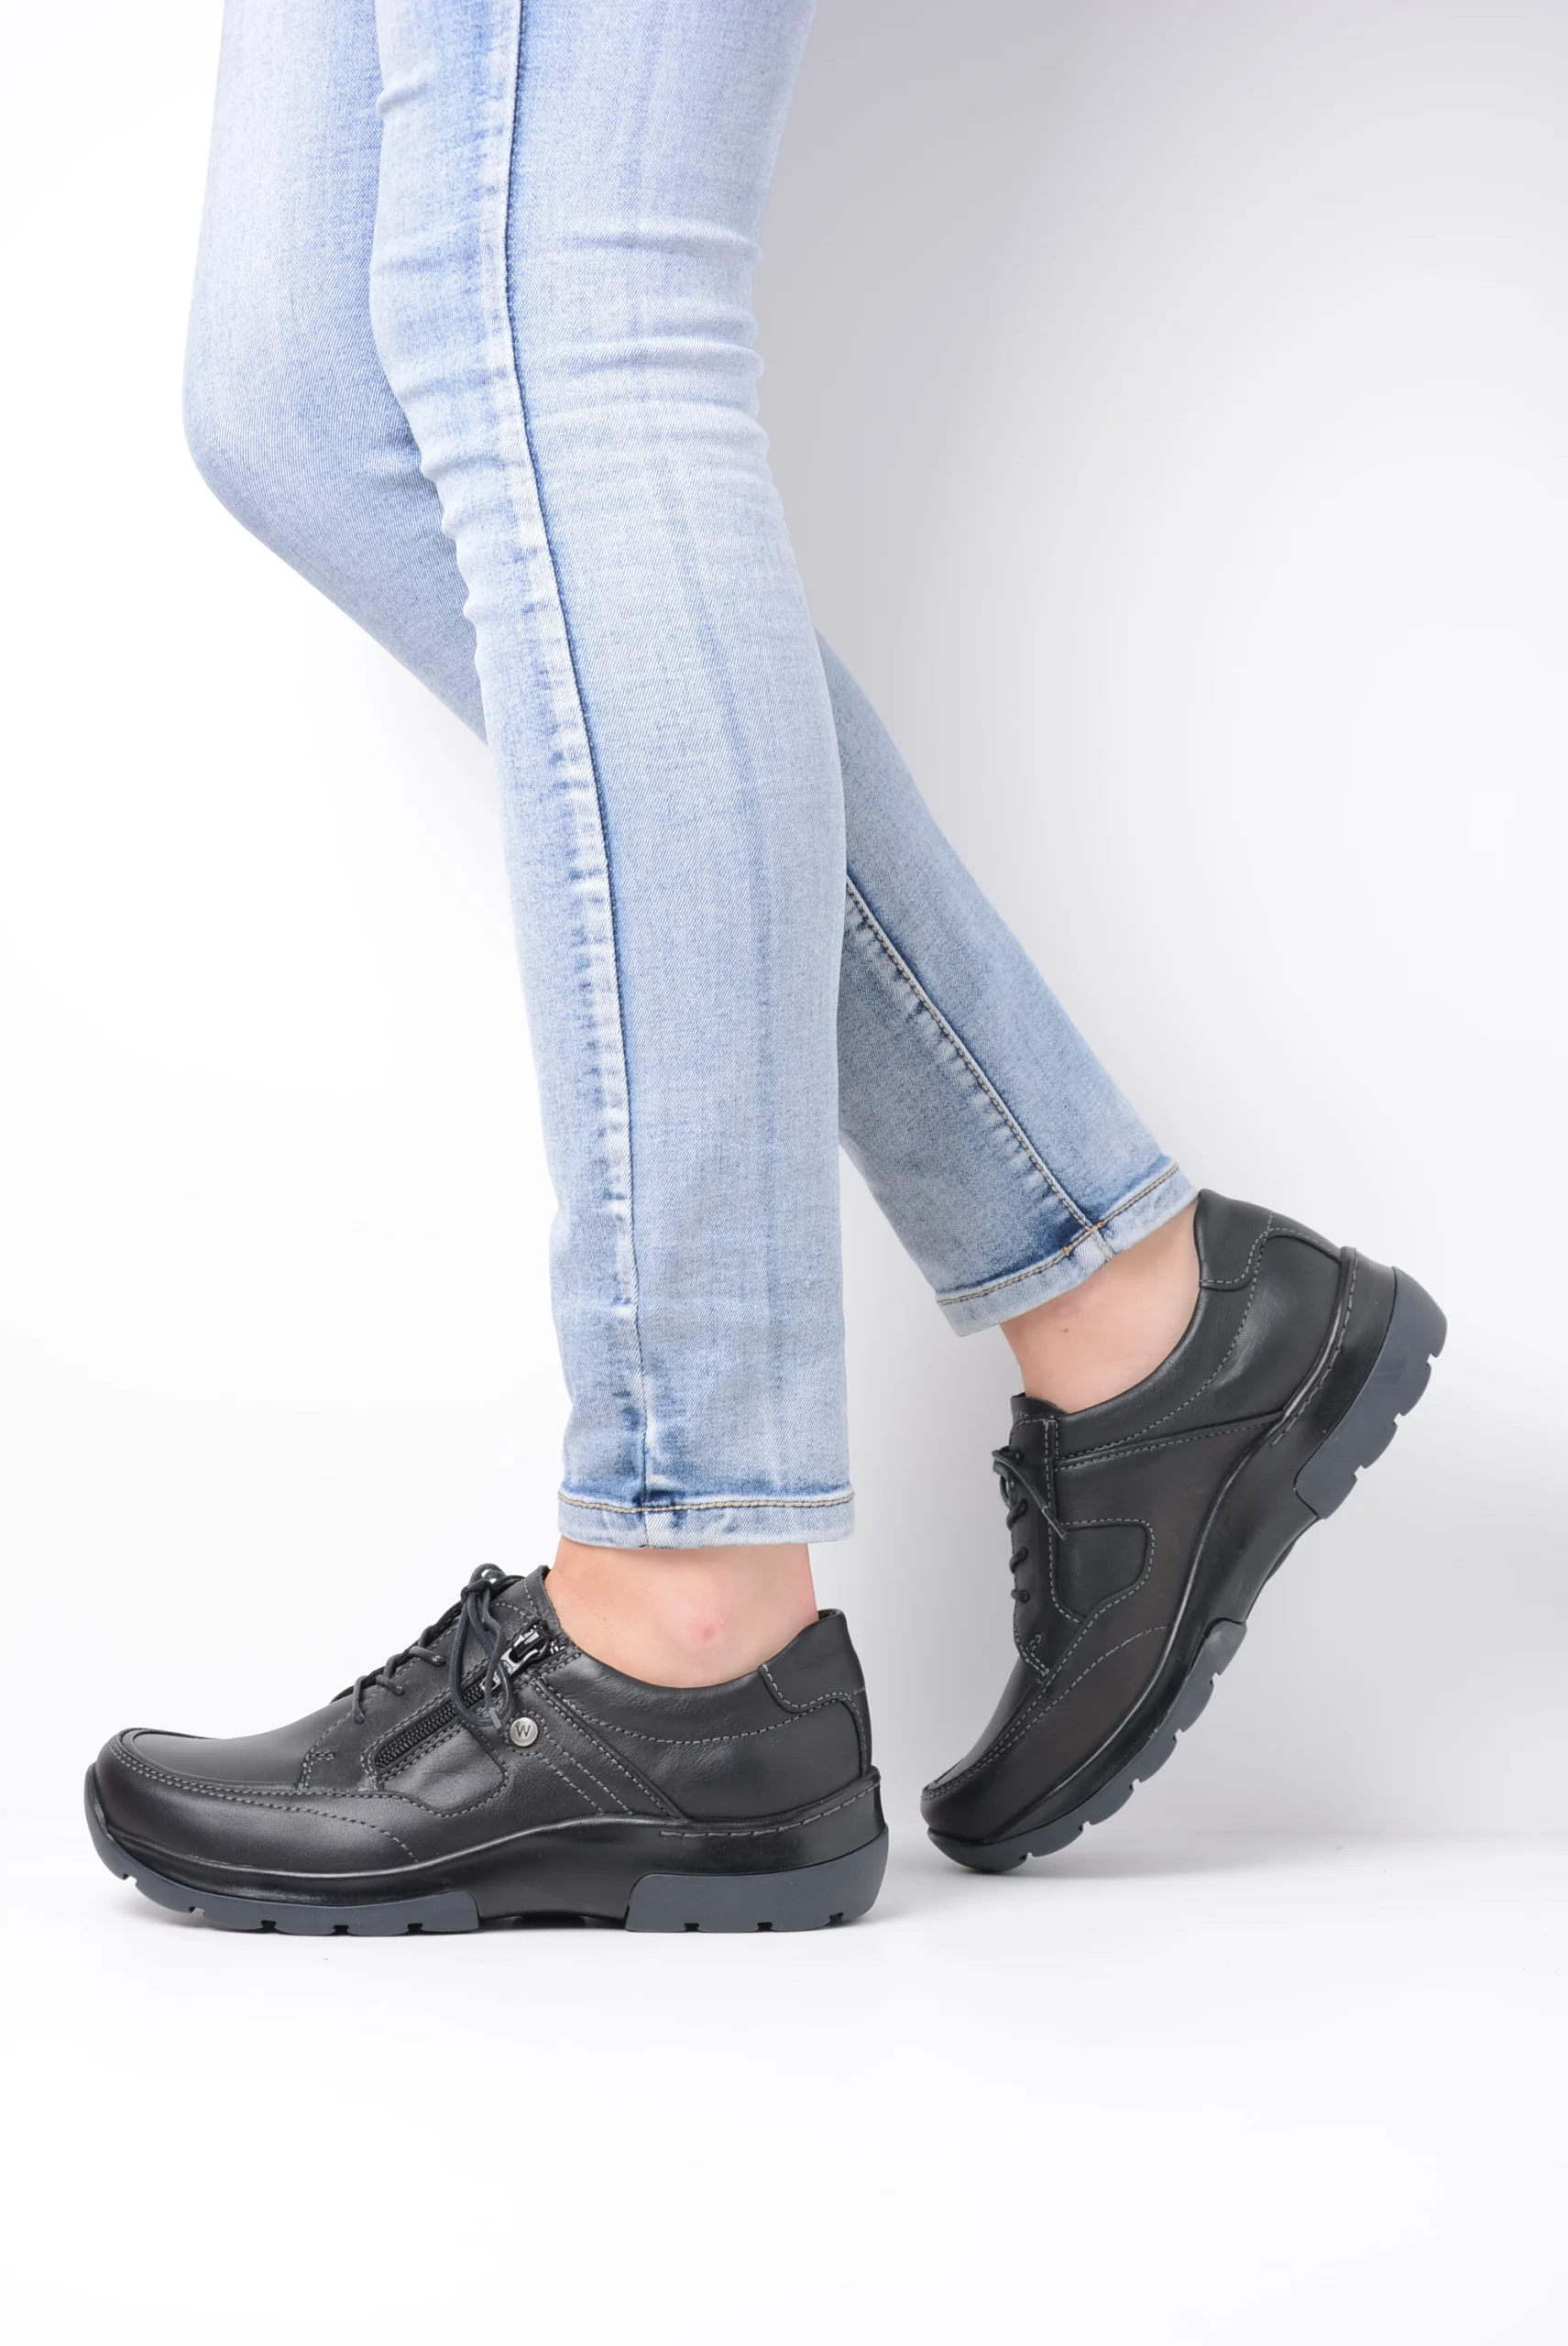 GRATIS VERZENDING Schoenen damesschoenen Sneakers & Sportschoenen Sneakers met veters Maat 37 EU Galaxy Design Vans Schoenen 